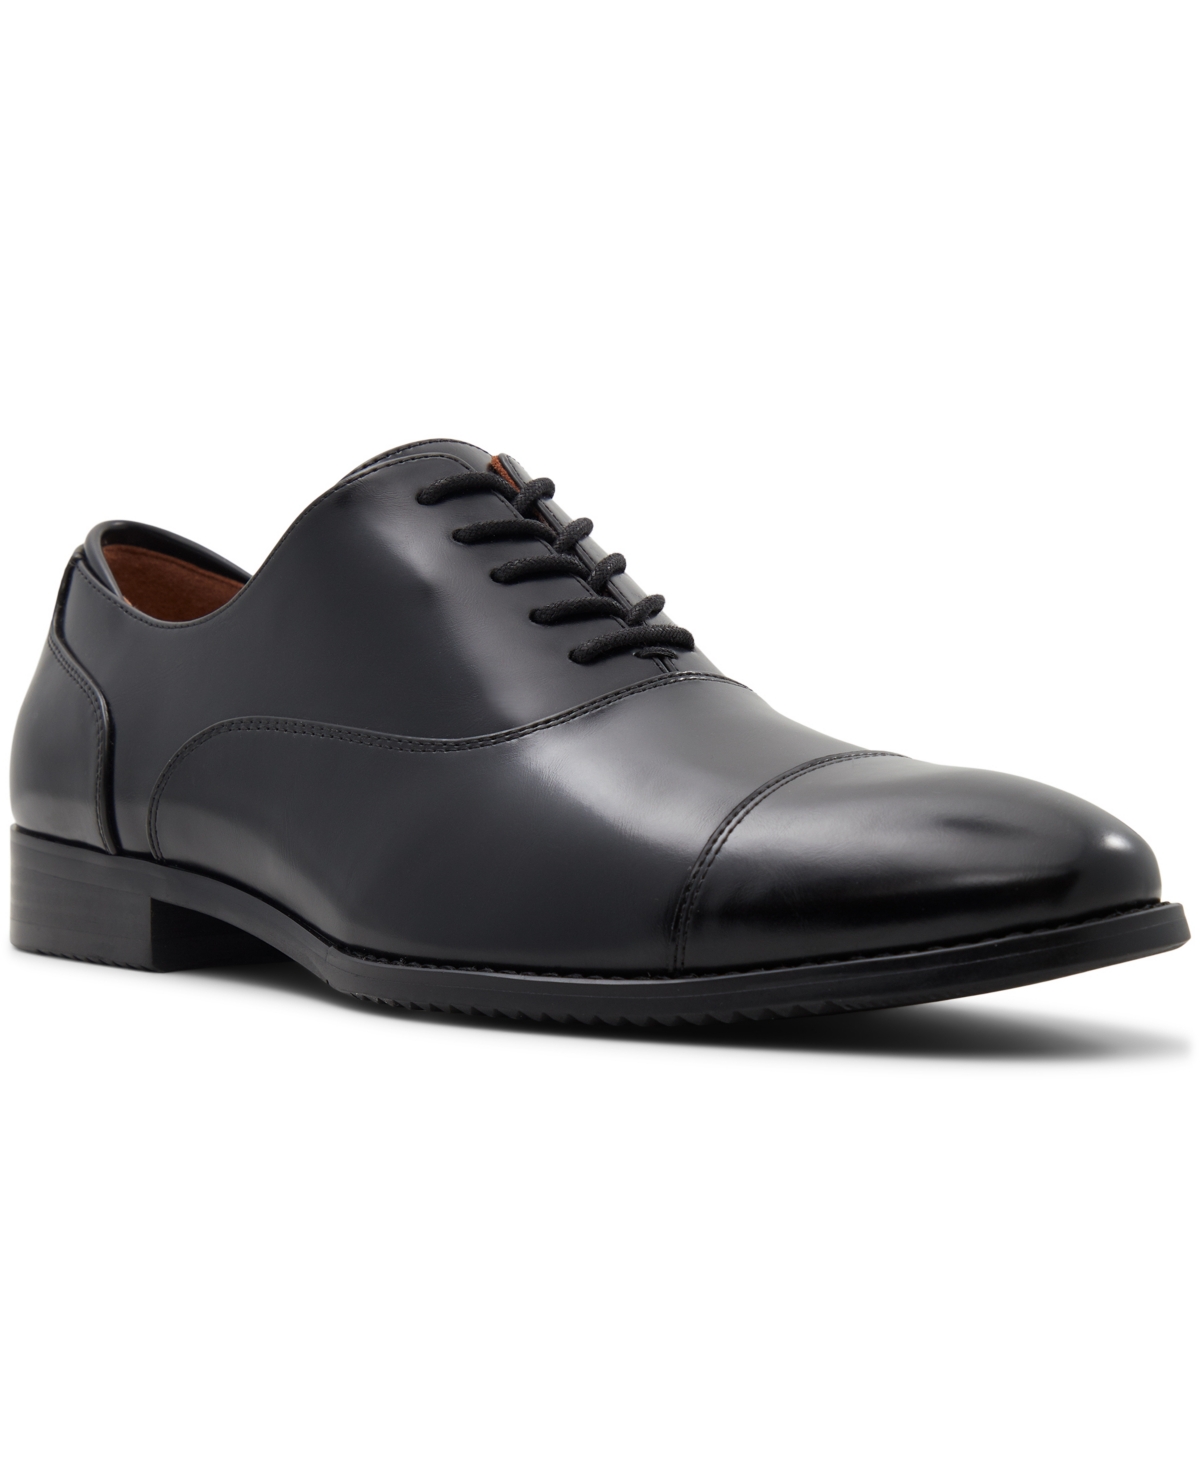 Men's Carlisle Lace-Up Oxford Shoes - Black